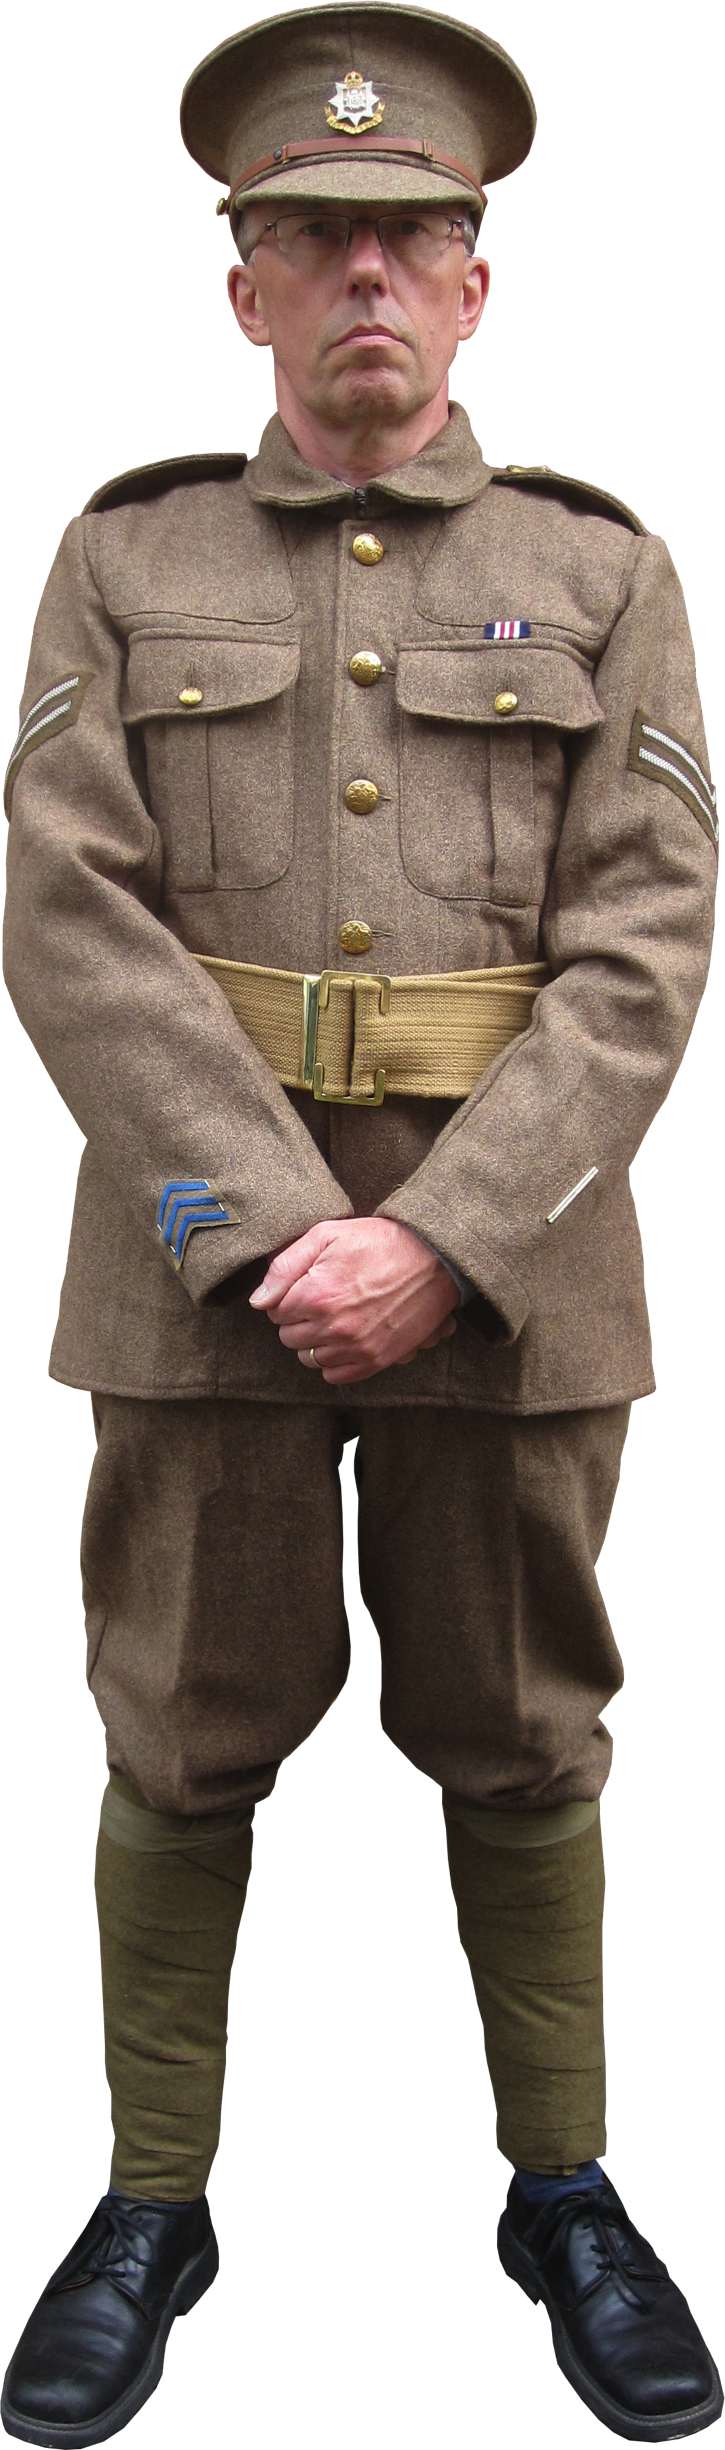 replica uniform